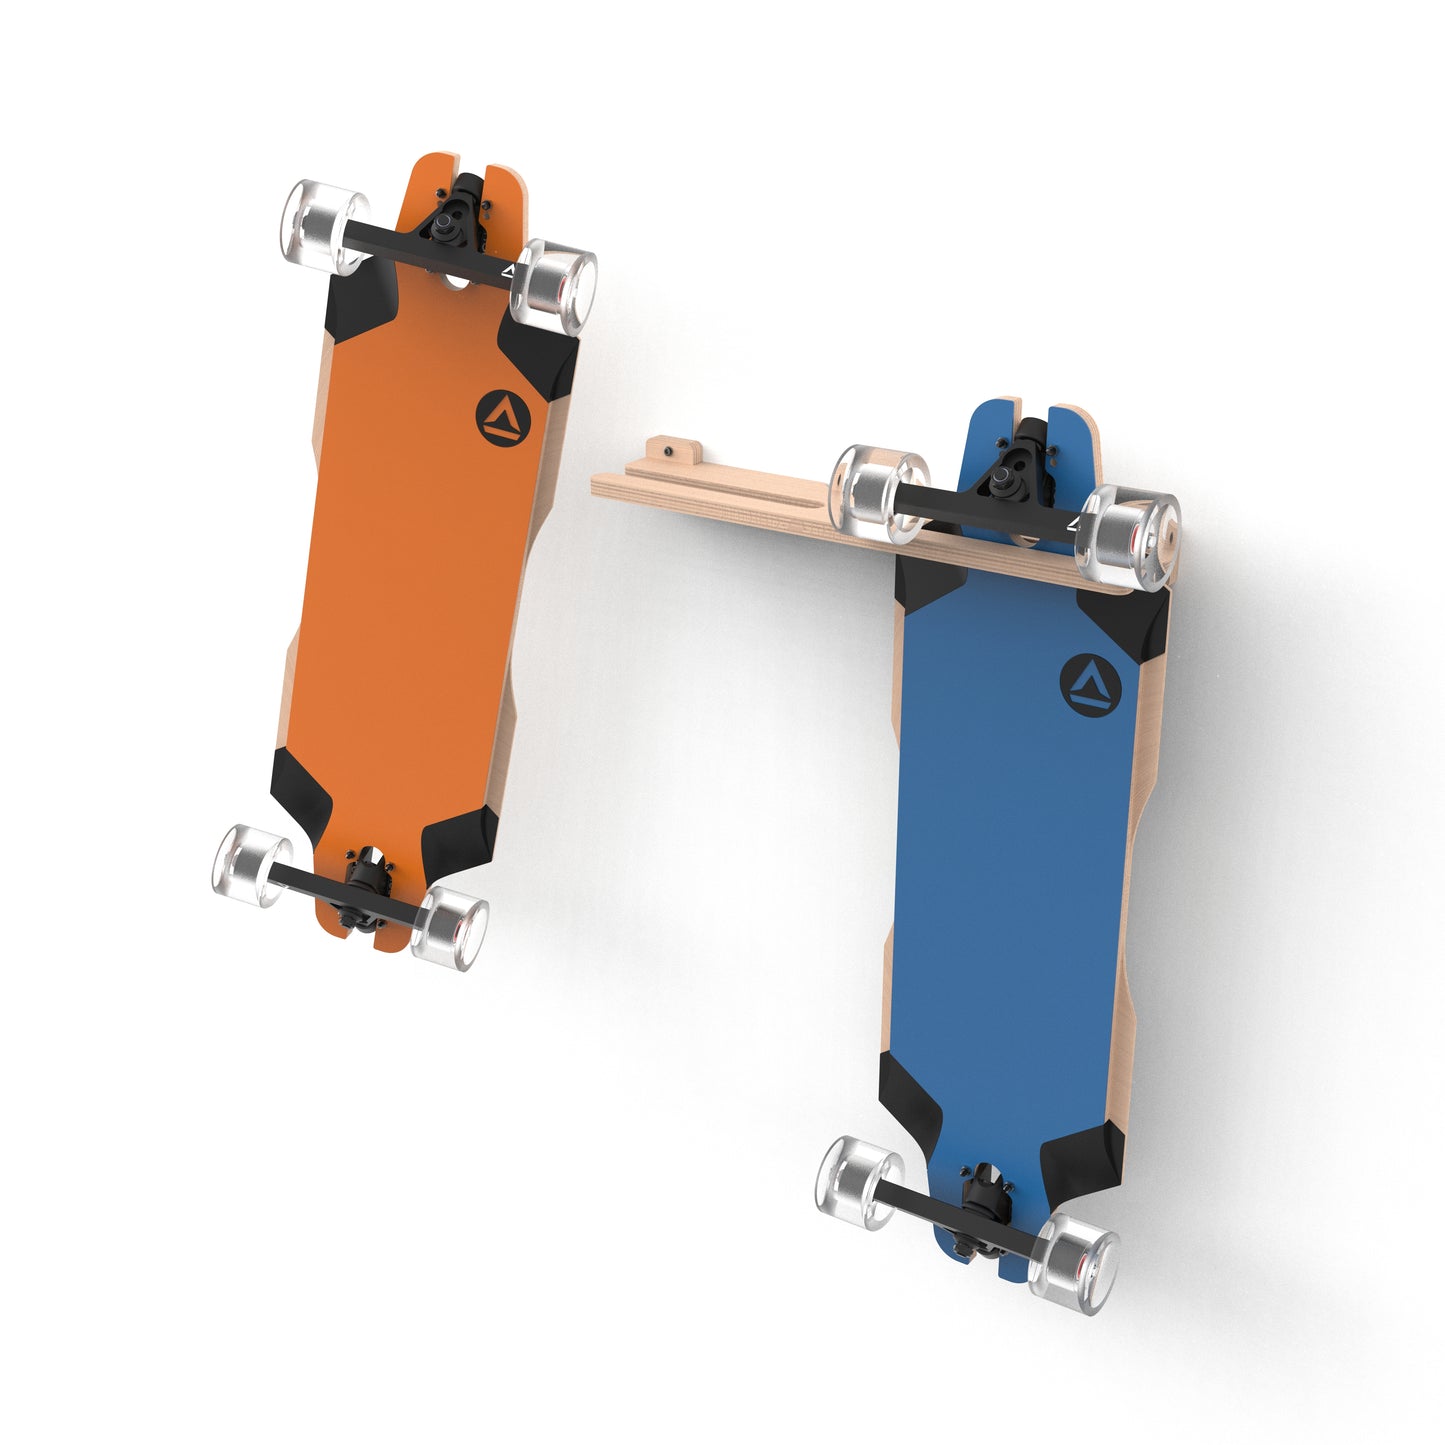 Skateboard / Longboard Wall Mount - Double Board Hanger